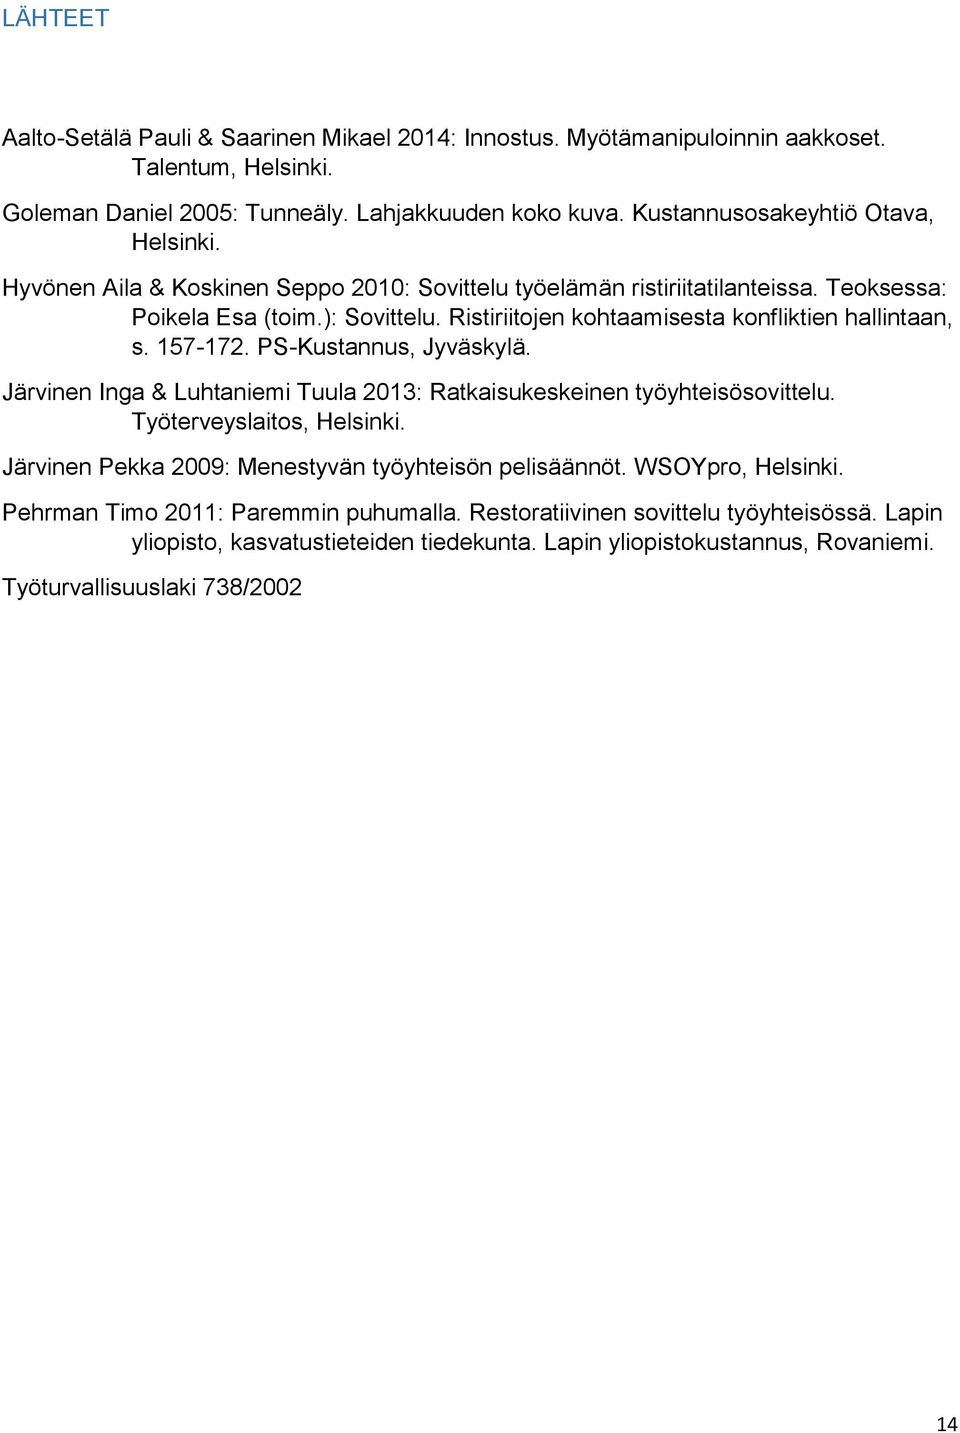 Ristiriitojen kohtaamisesta konfliktien hallintaan, s. 157-172. PS-Kustannus, Jyväskylä. Järvinen Inga & Luhtaniemi Tuula 2013: Ratkaisukeskeinen työyhteisösovittelu. Työterveyslaitos, Helsinki.